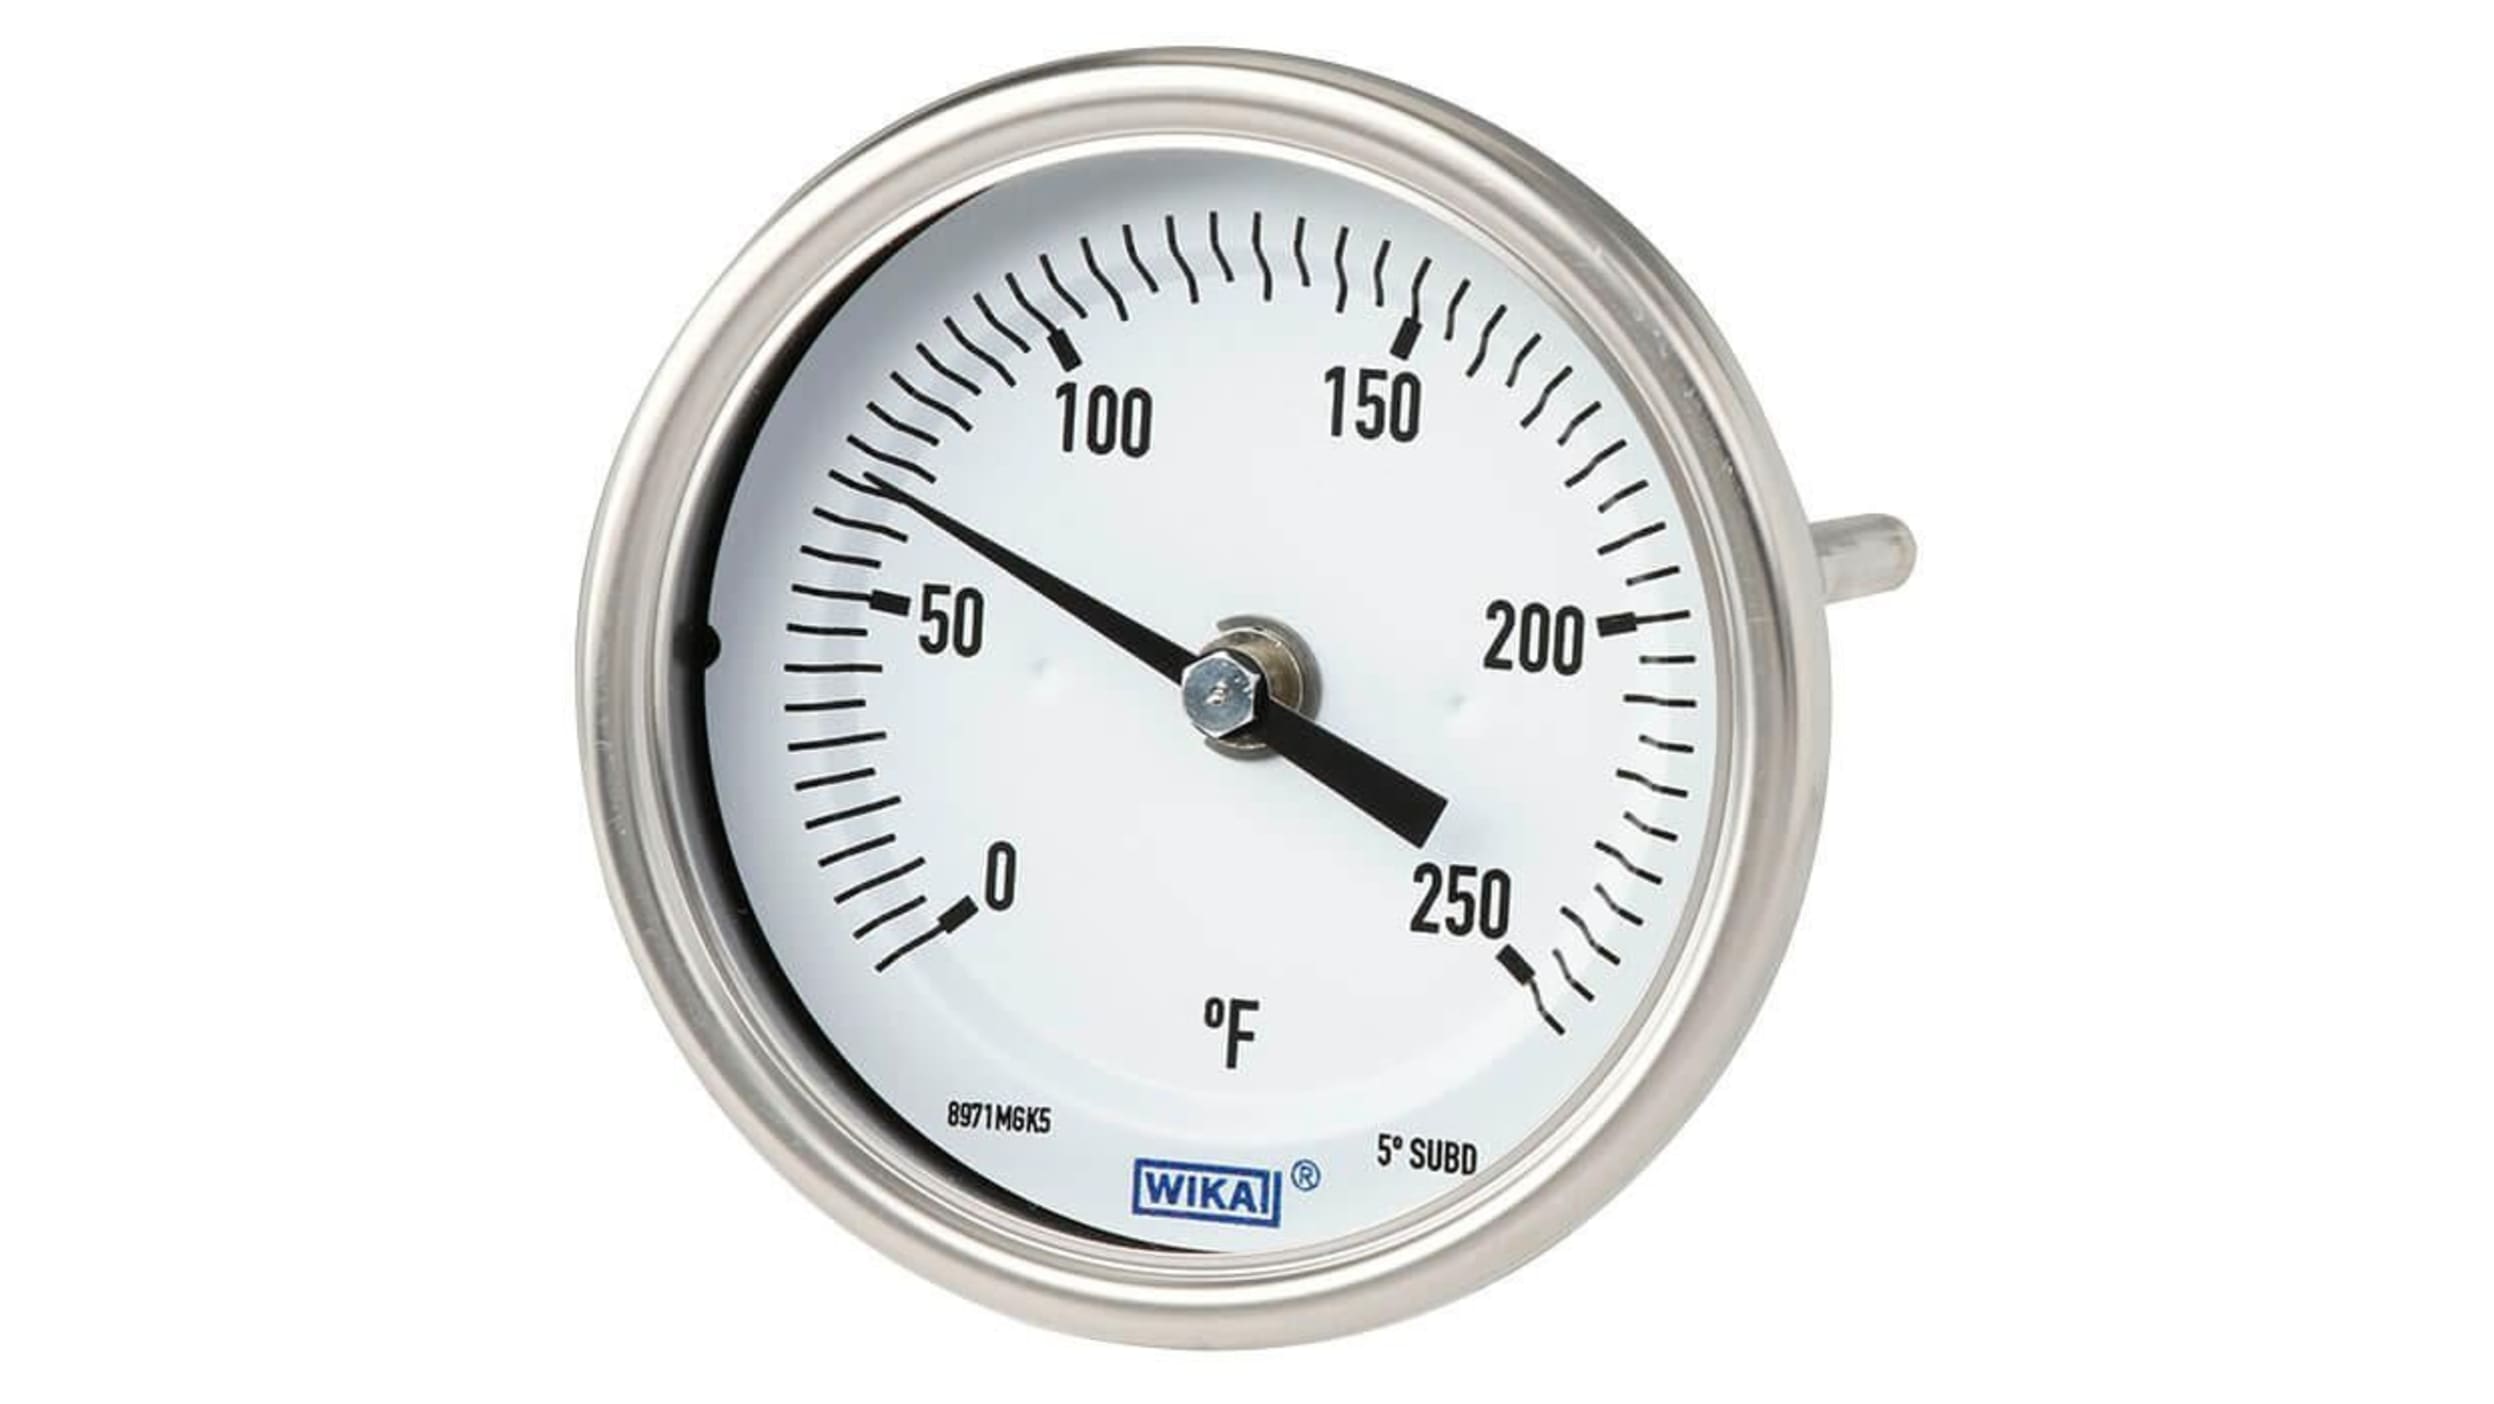 Thermomètre à contact bimétallique 0-60°C boîtier 63 mm